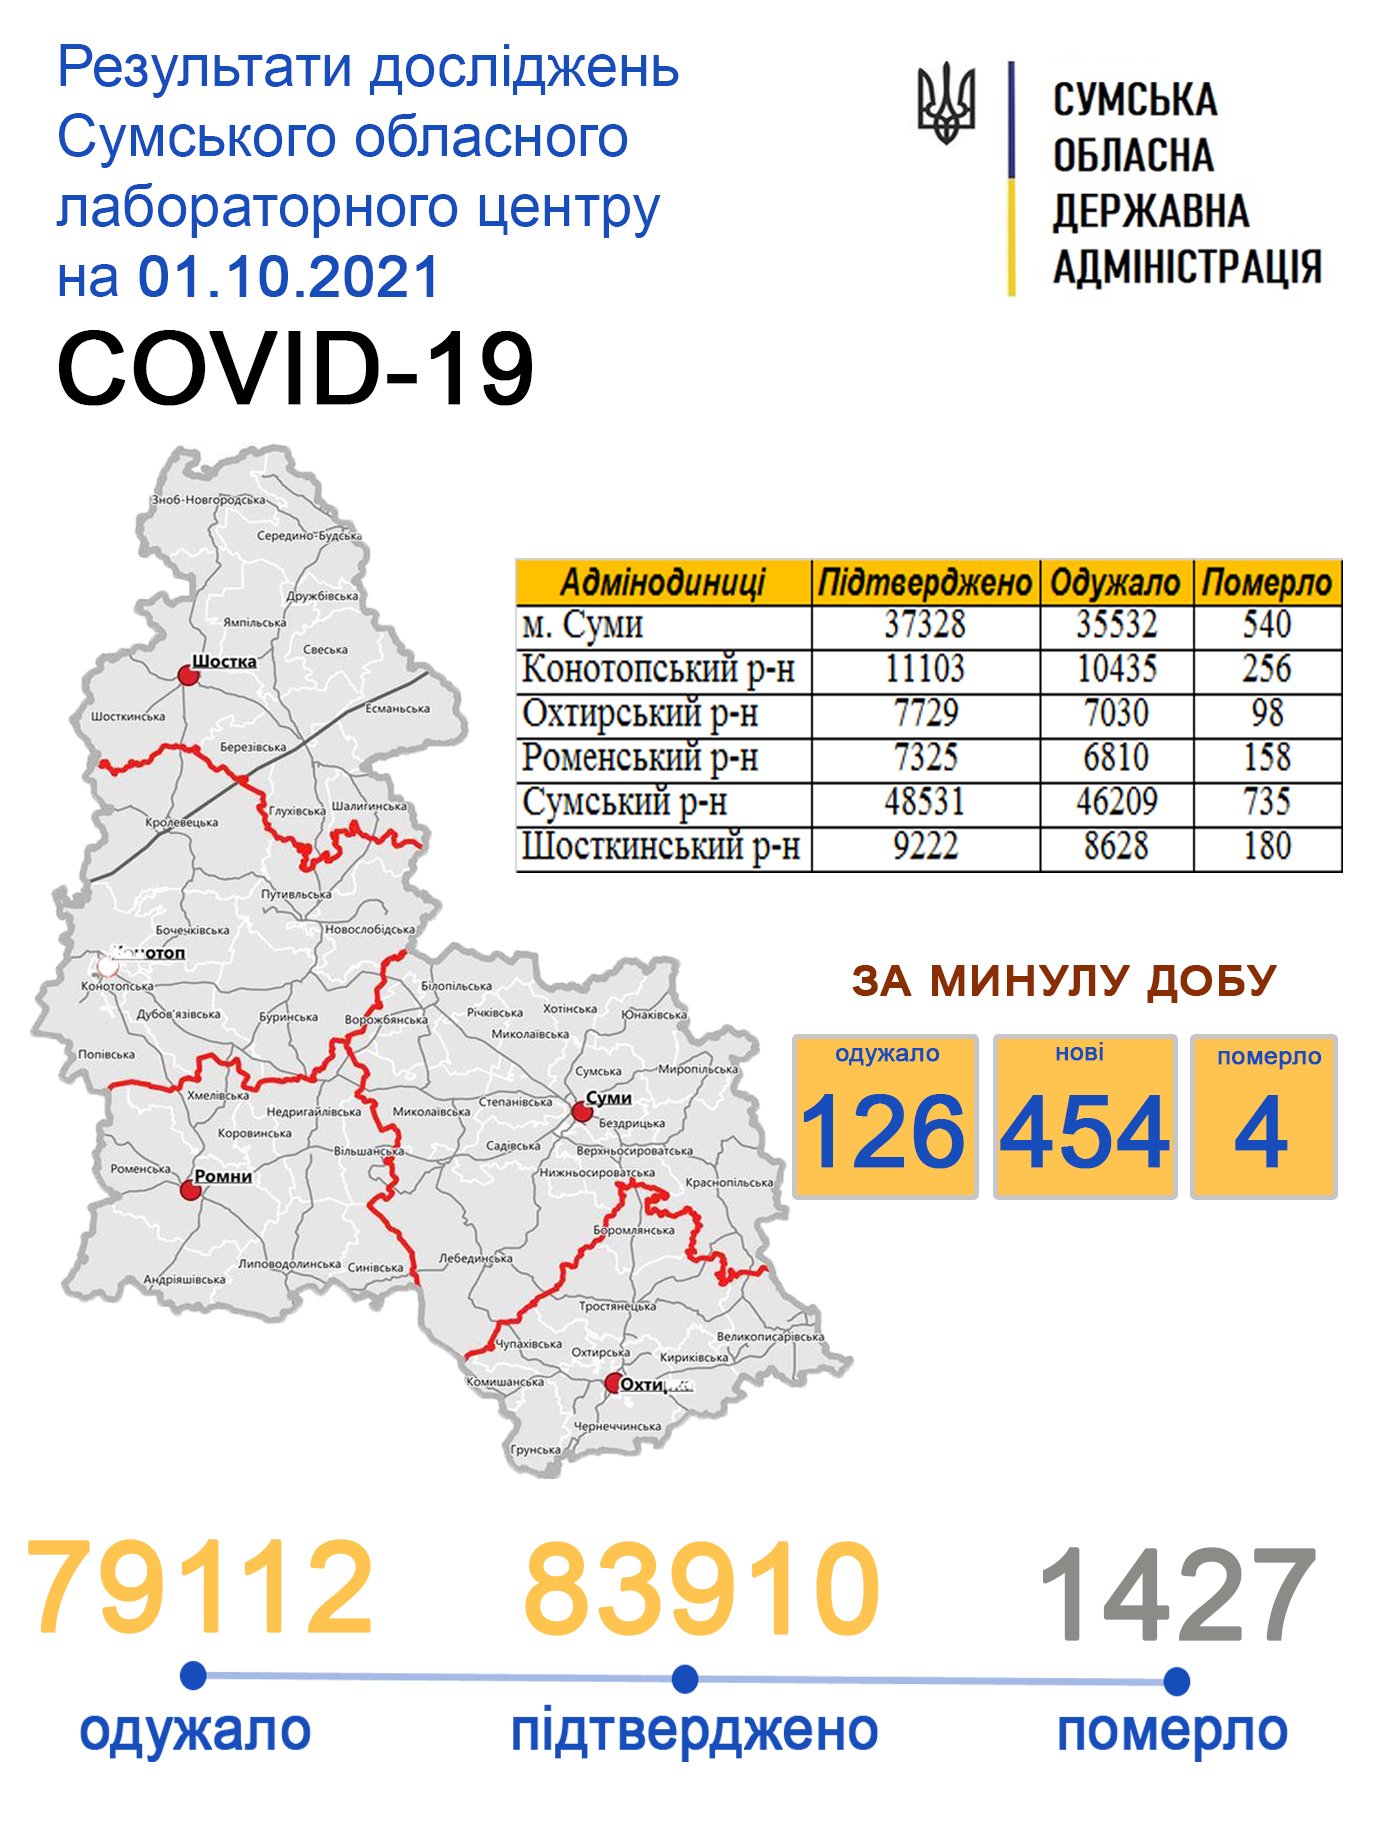     covid-19  454 